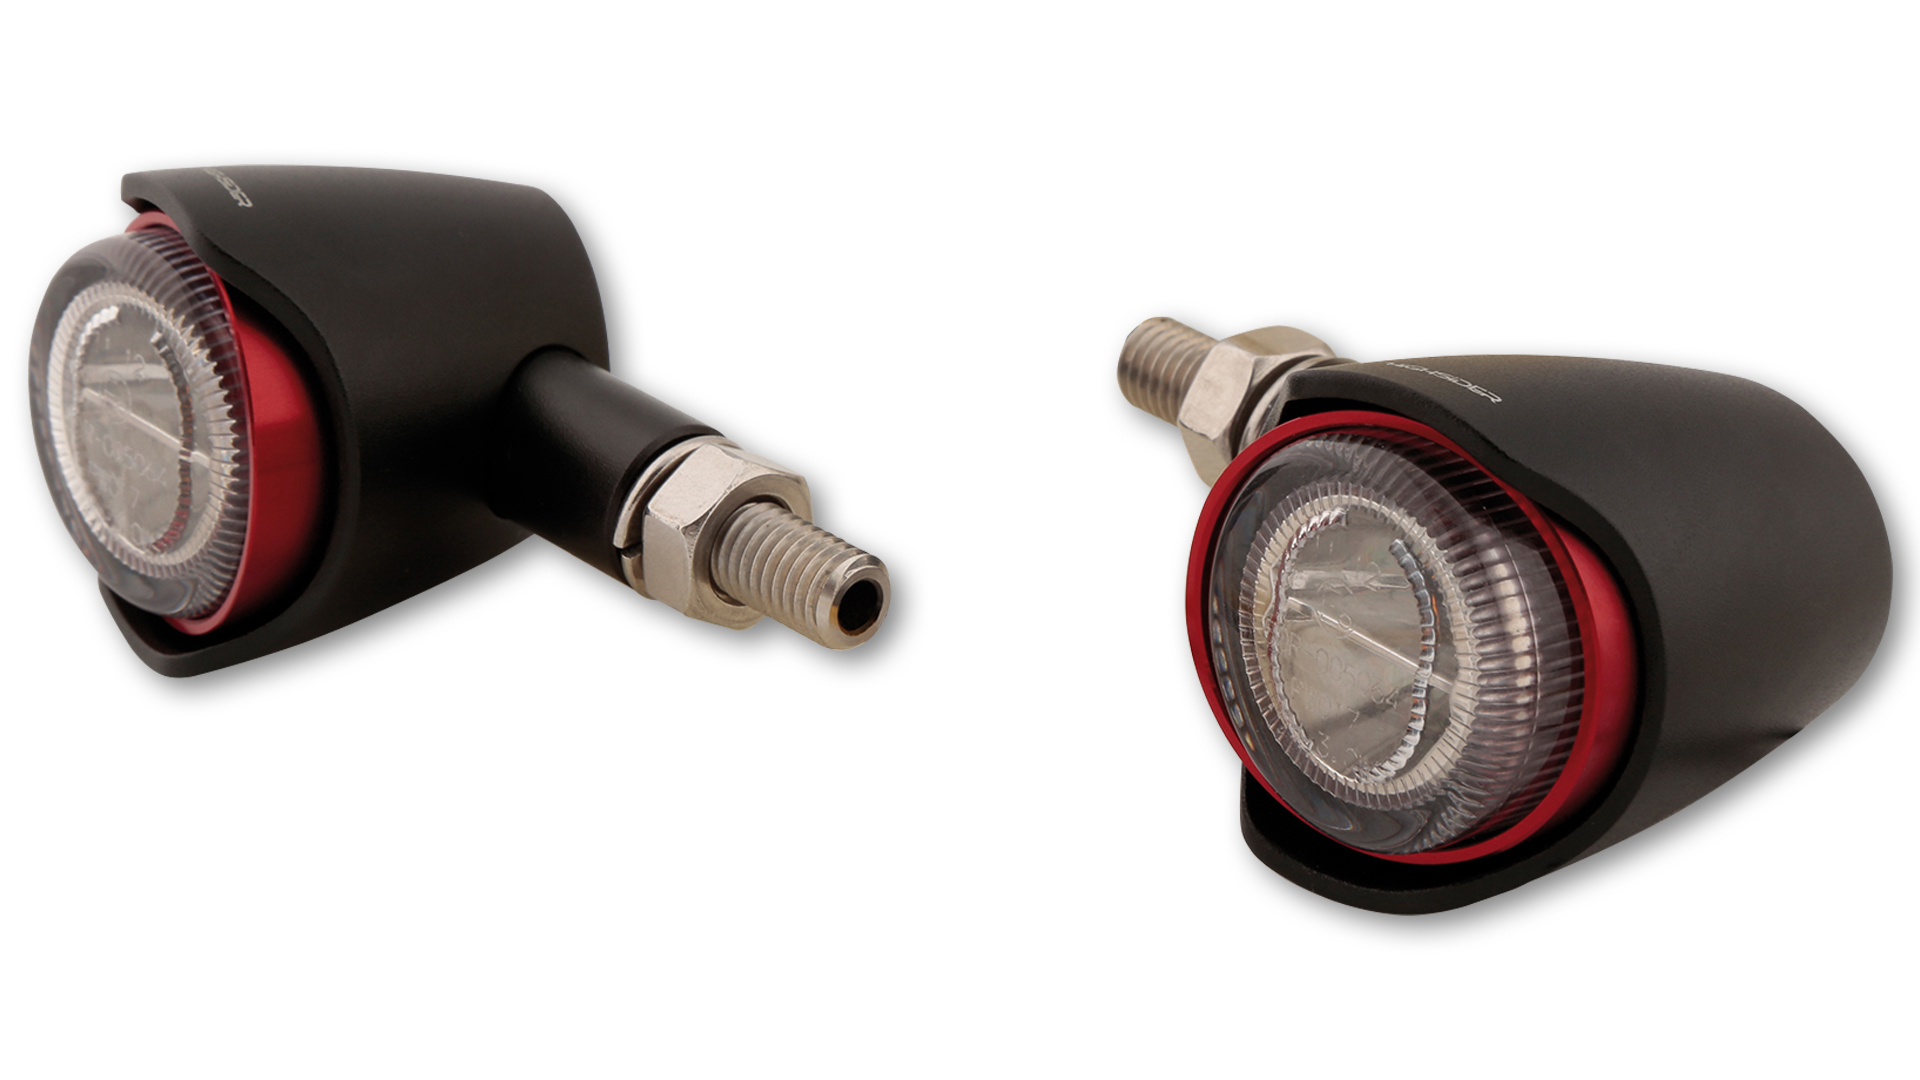 HIGHSIDER AKRON-X LED Rück-, Bremslicht, Blinker, getöntes Glas, in verschiedenen Farben erhältlich, E-geprüft, Paar.